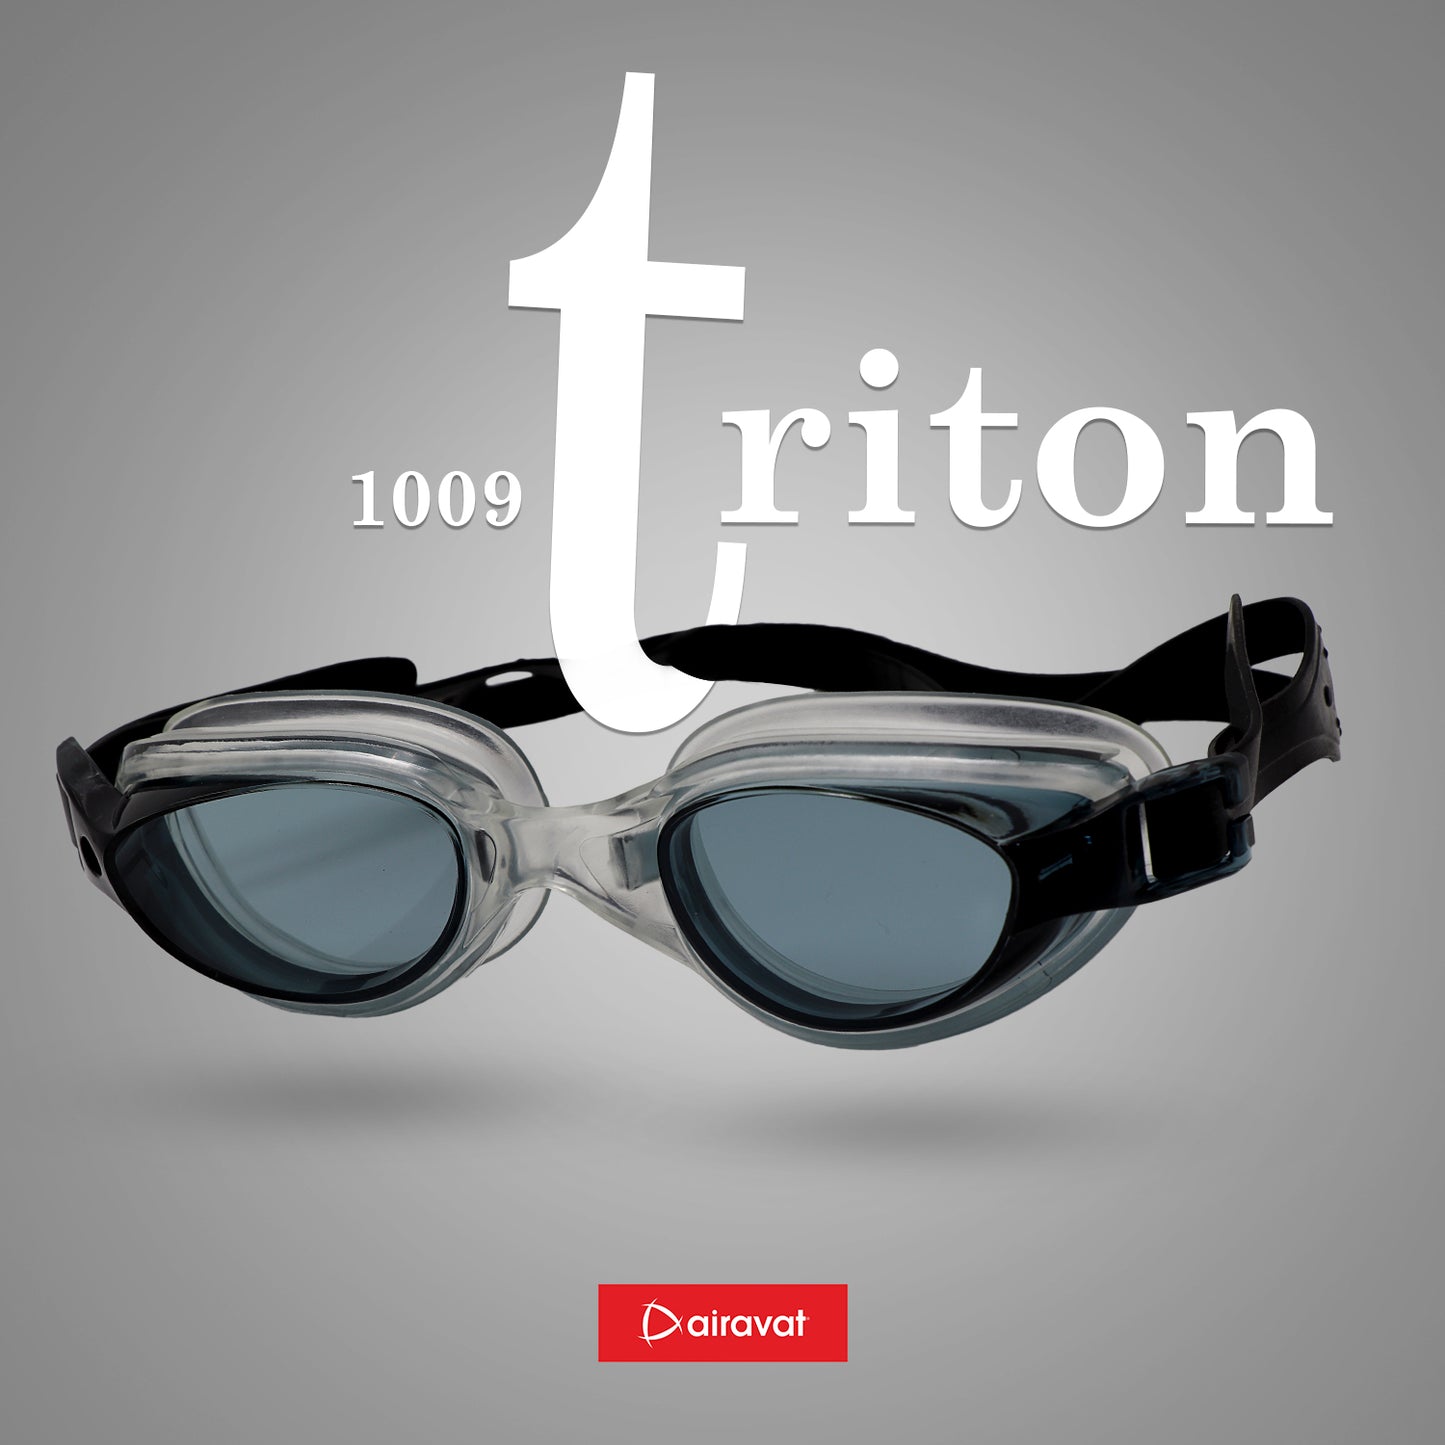 TRITON 1009